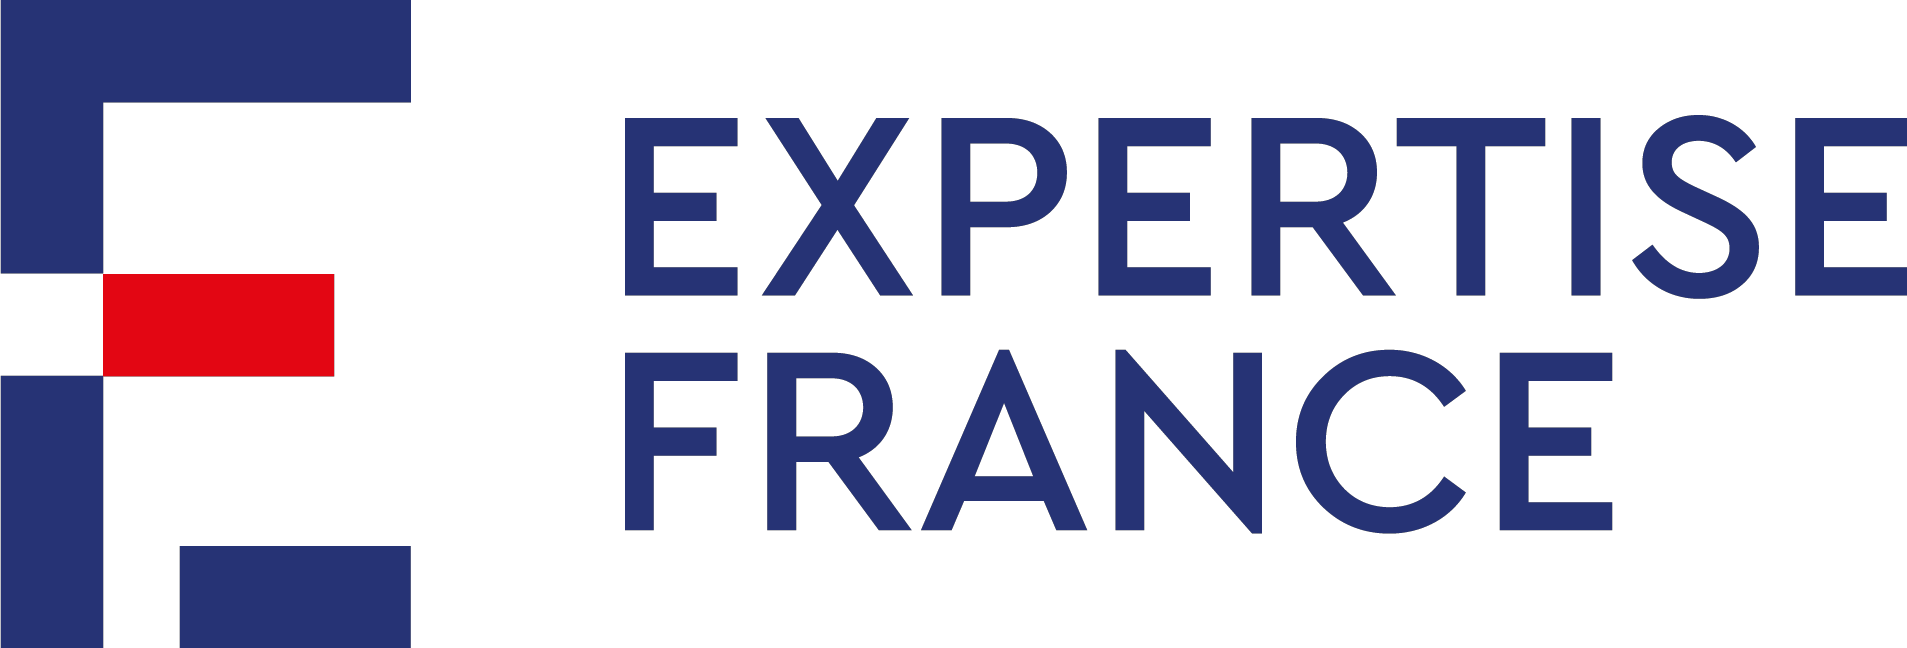 Expertisse France logo